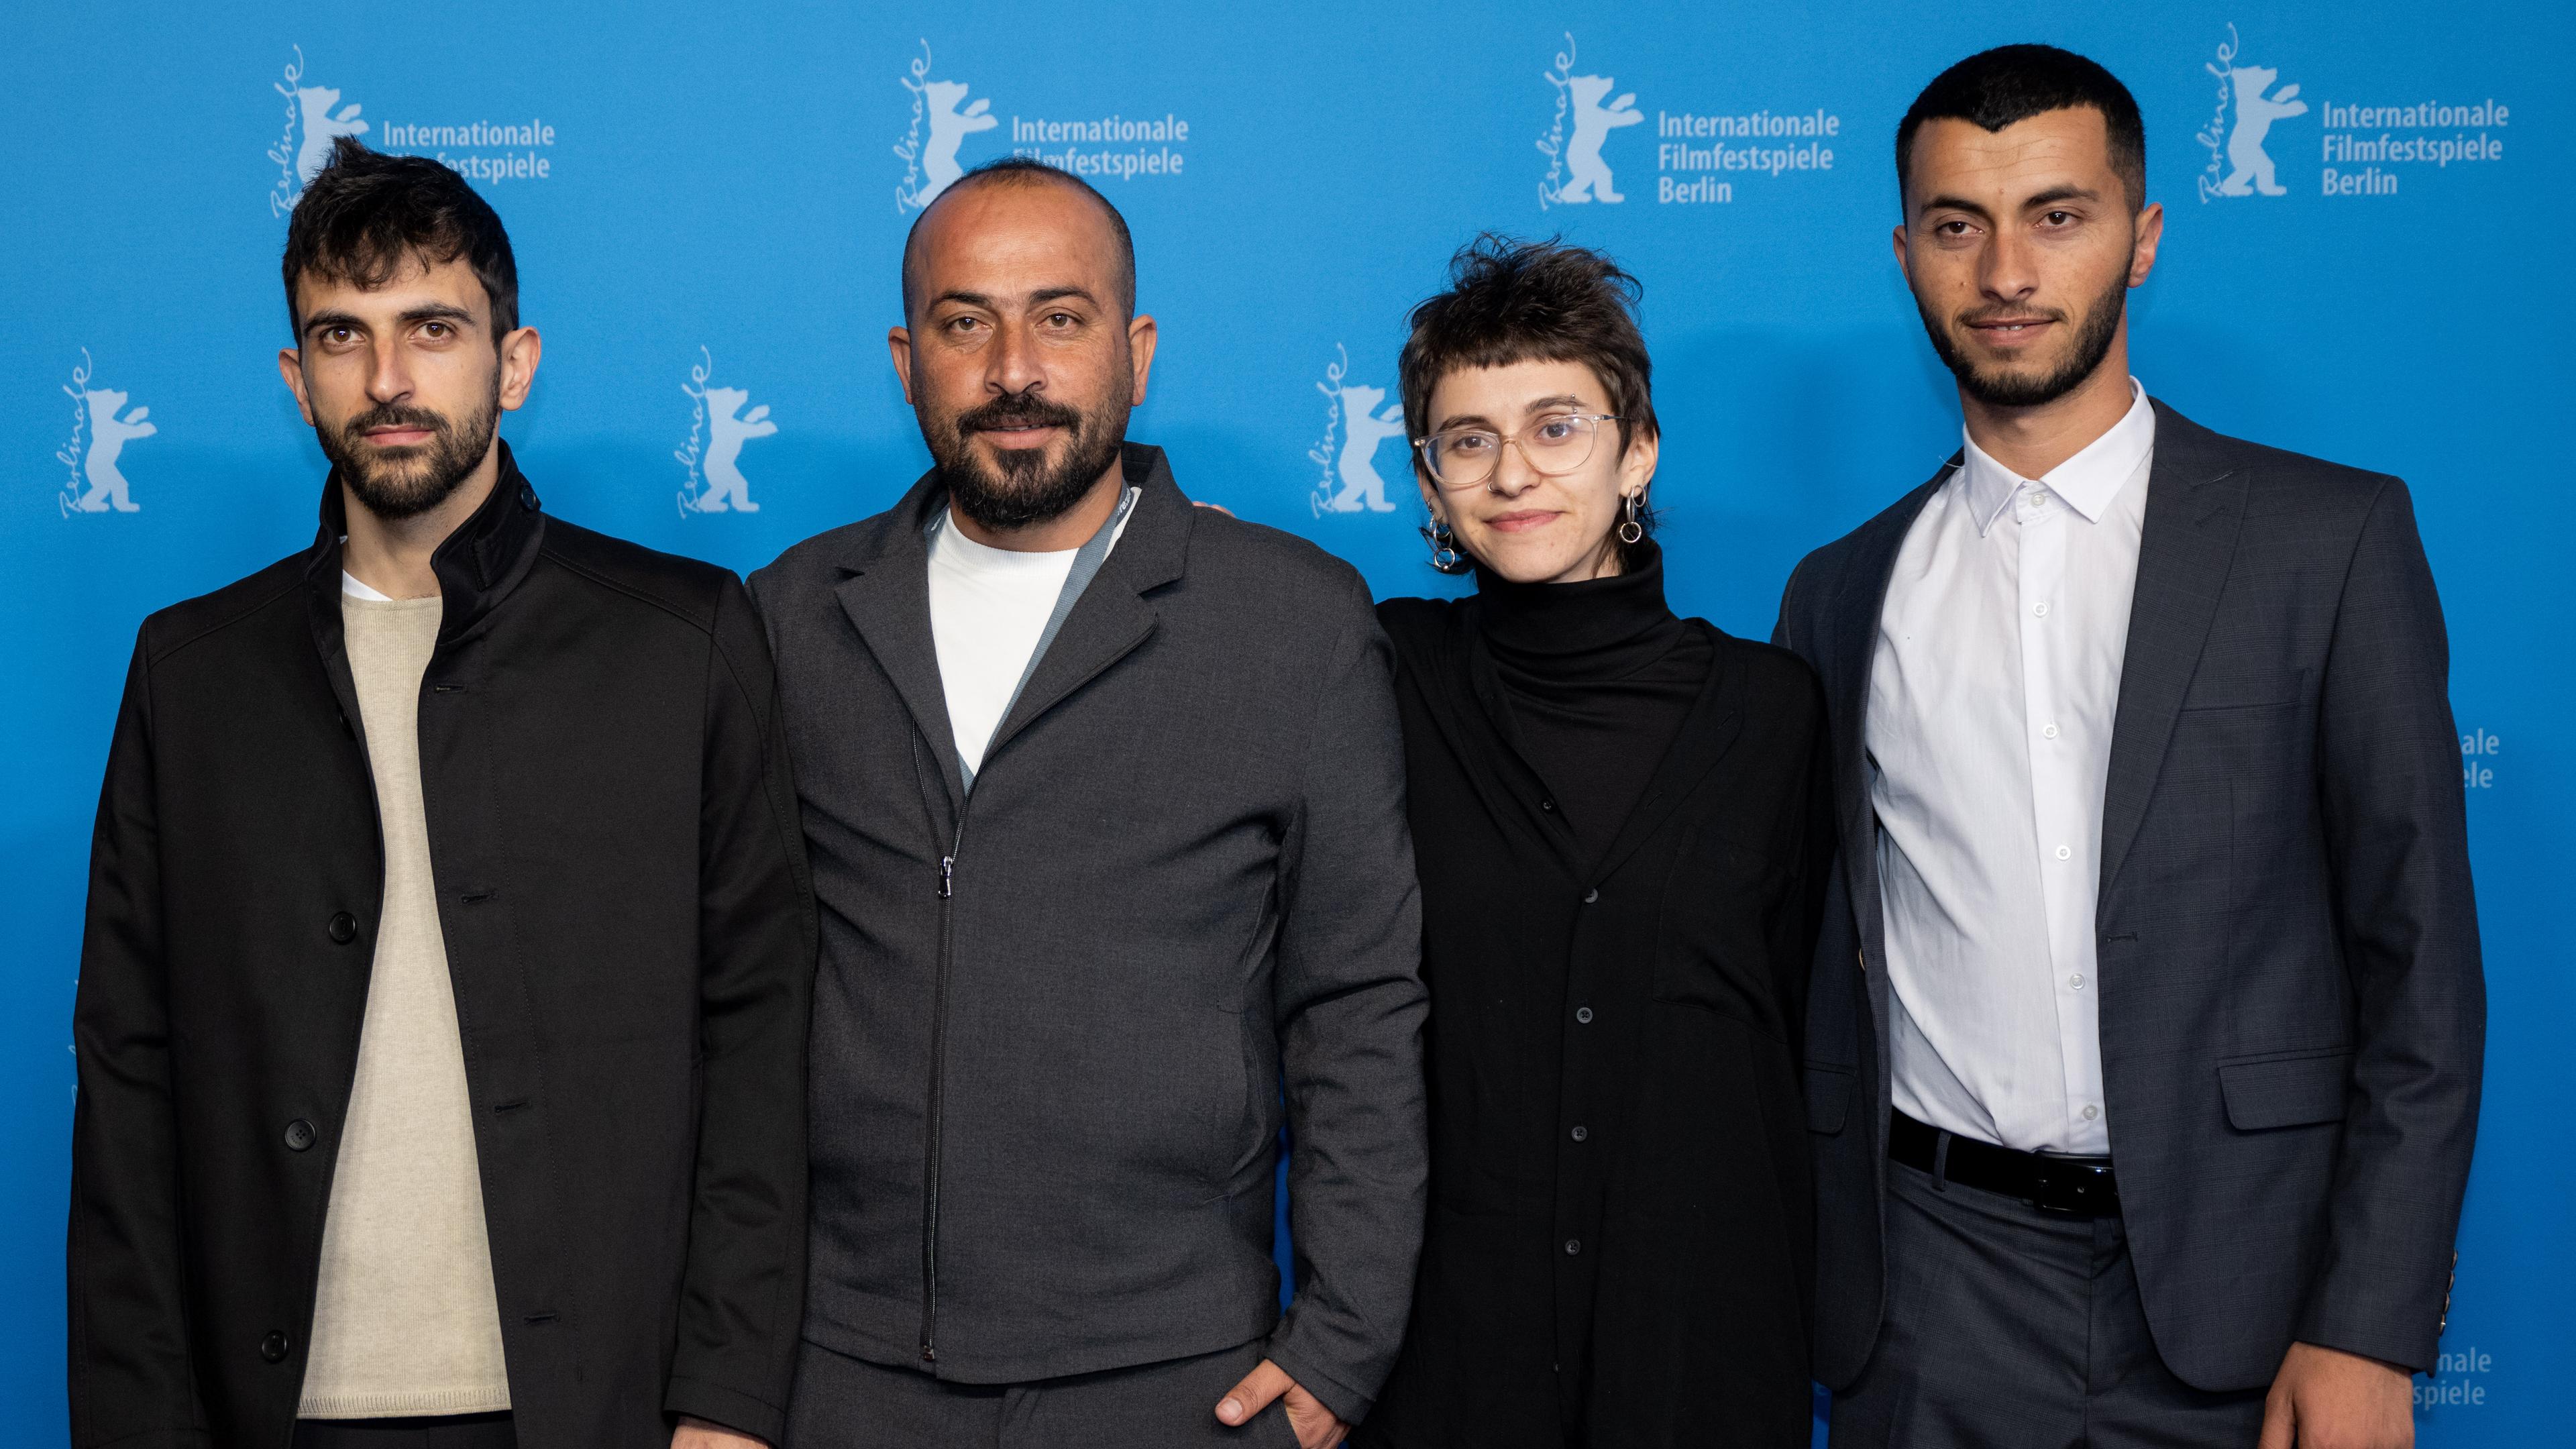 Yuval Abraham, Hamdan Ballal, Rachel Szor und Basel Adra (v.l.n.r.) bei der Premiere von "No Other Land" in Berlin.